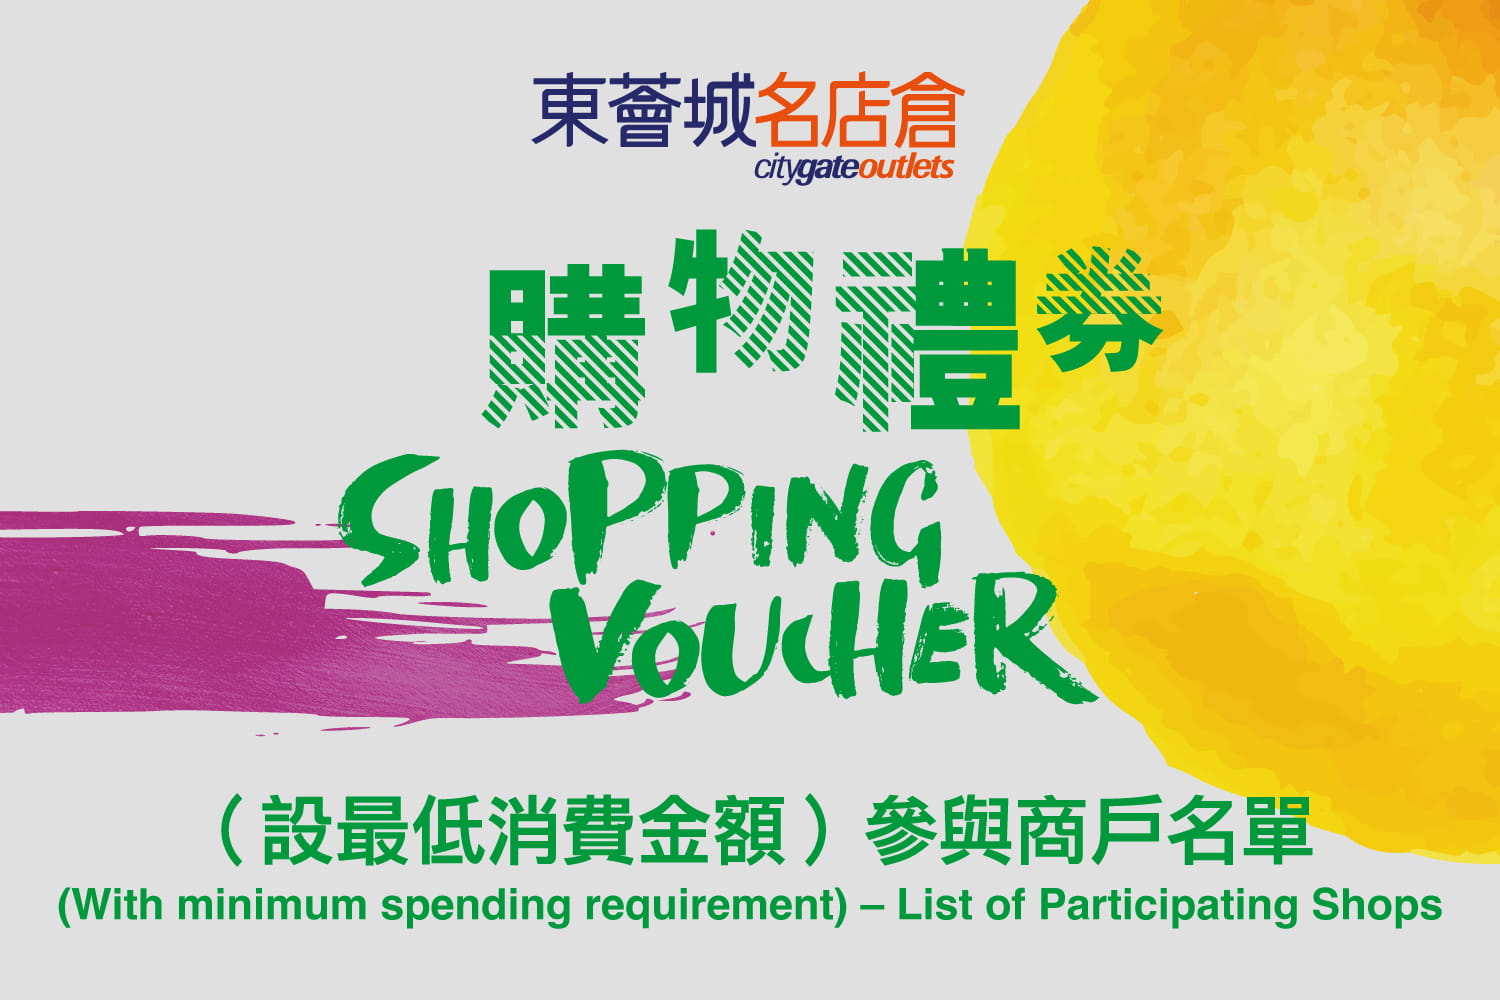 東薈城名店倉電子購物禮券（設最低消費金額）參與商戶名單